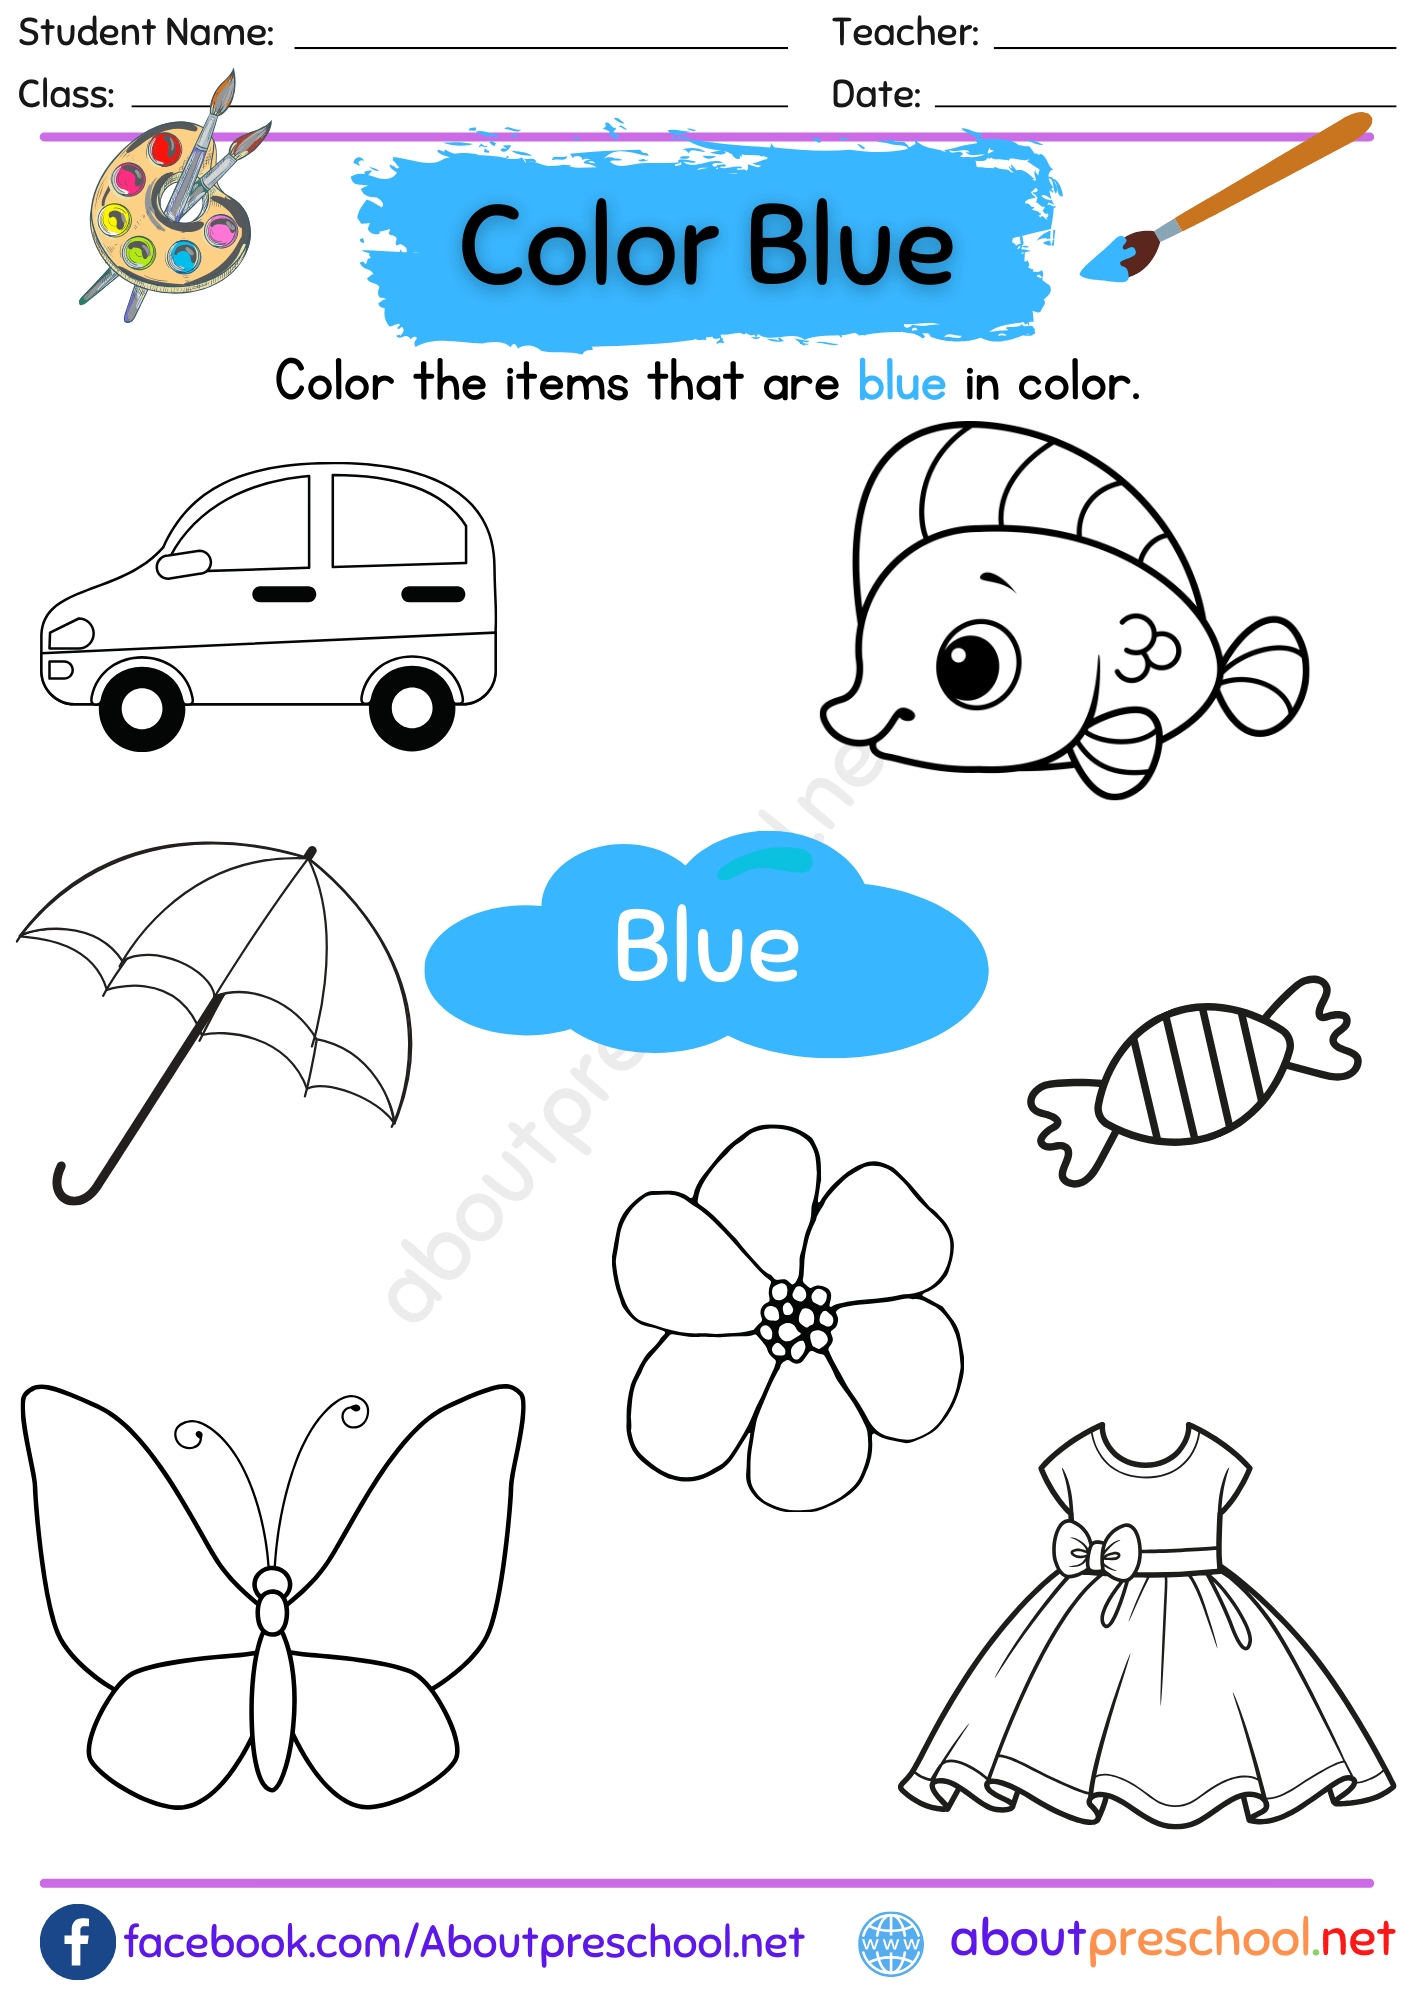 Color Blue Worksheet for Preschool